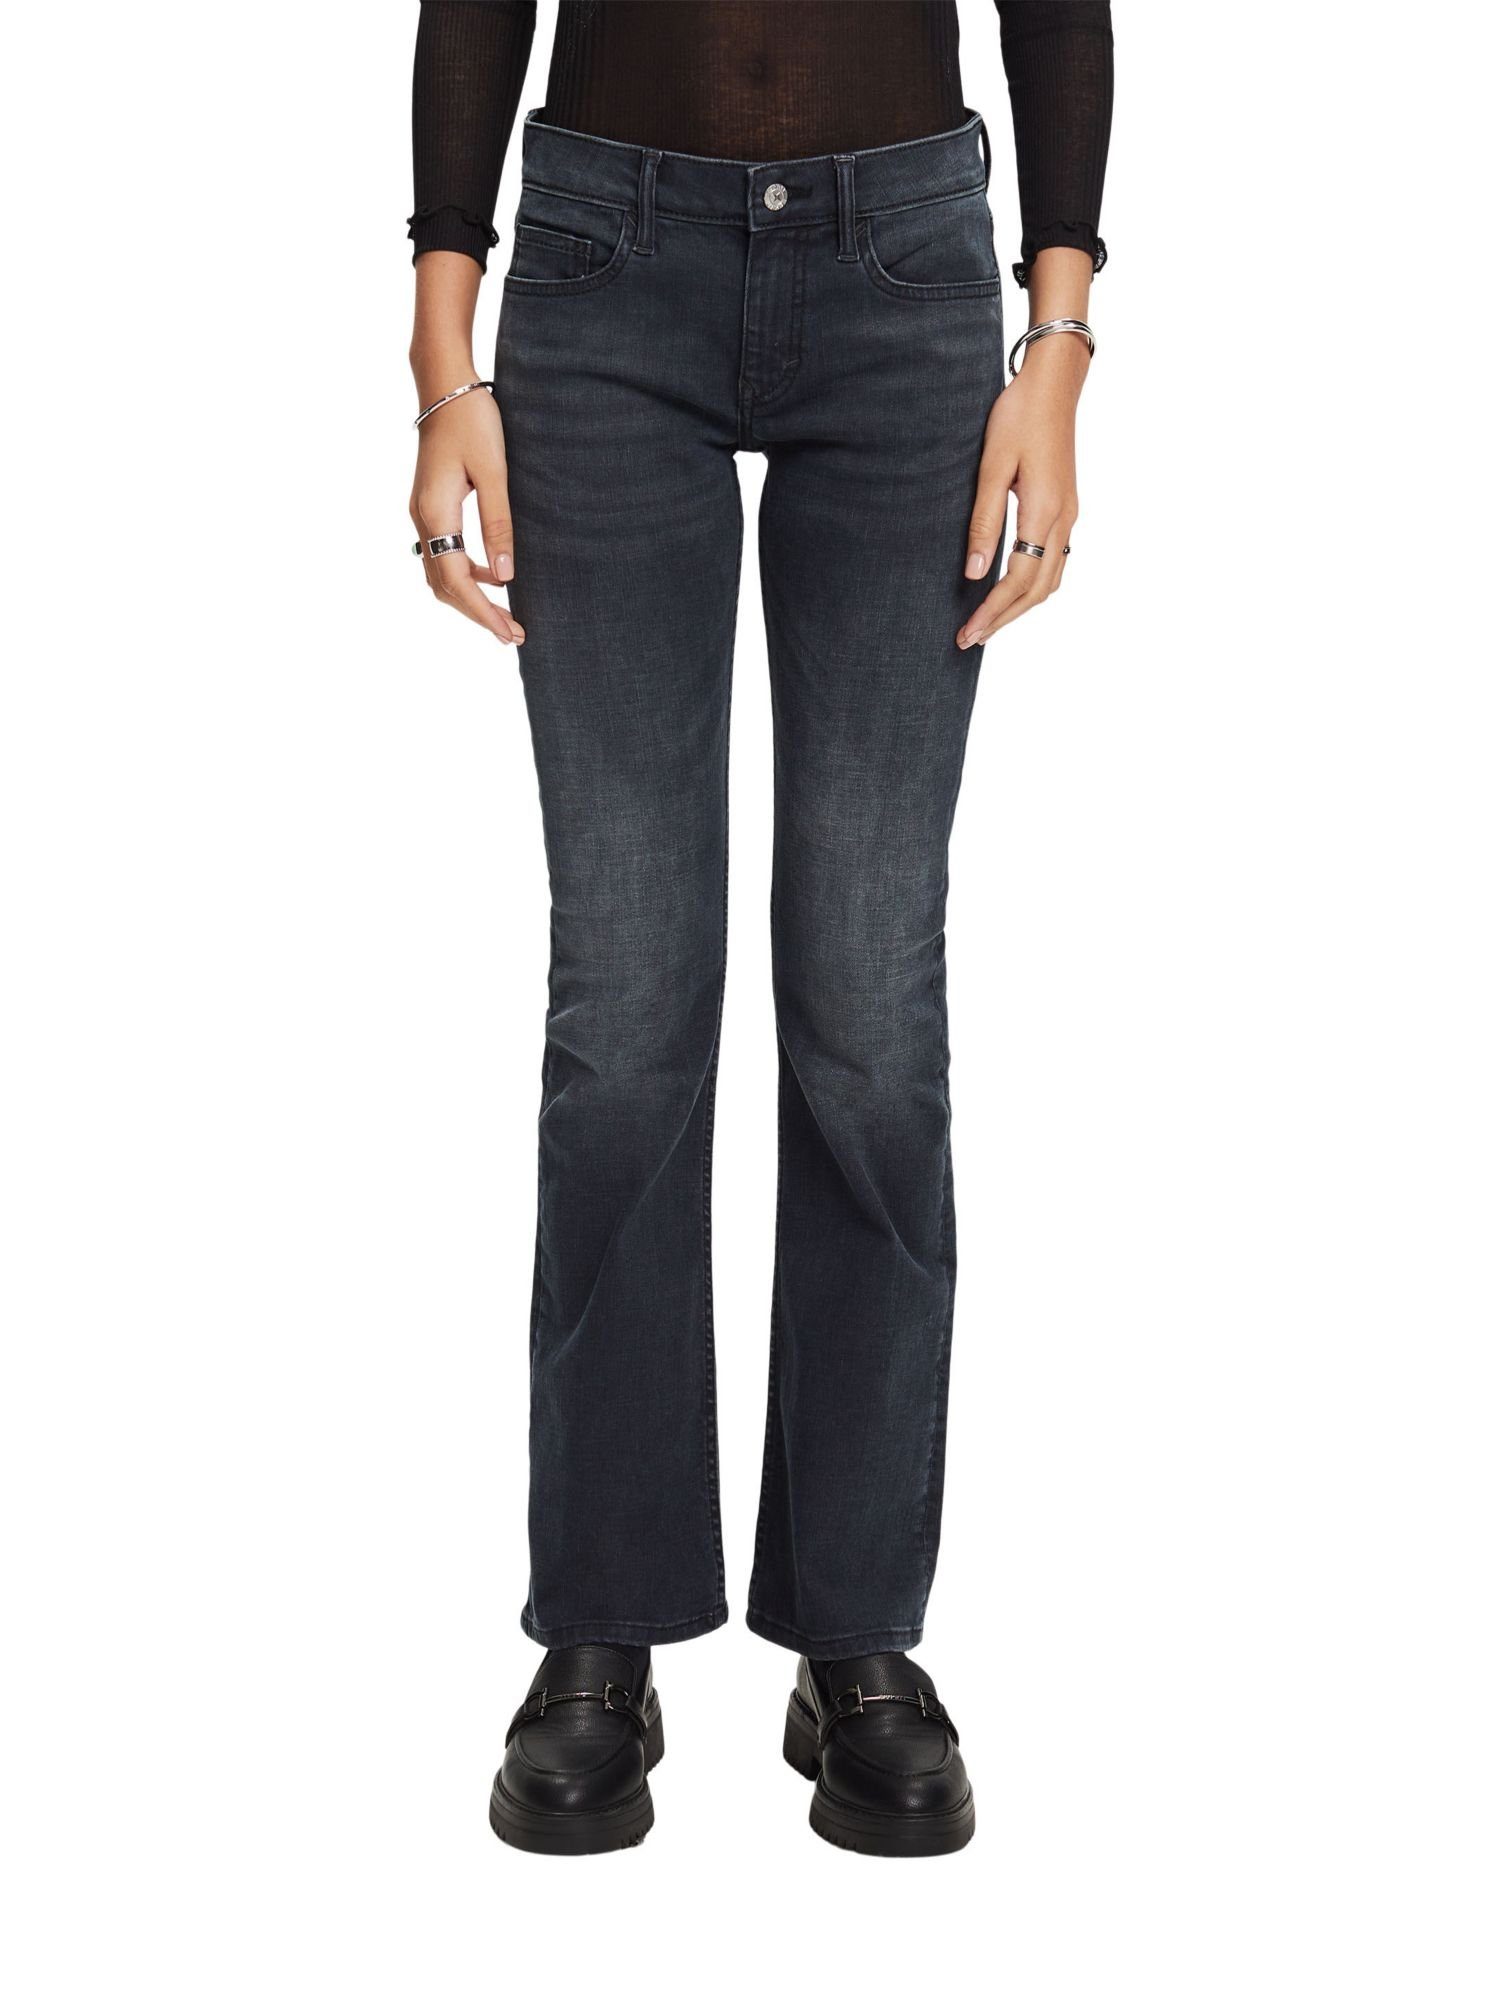 Bund Esprit Bootcut-Jeans mit mittelhohem Bootcut-Jeans